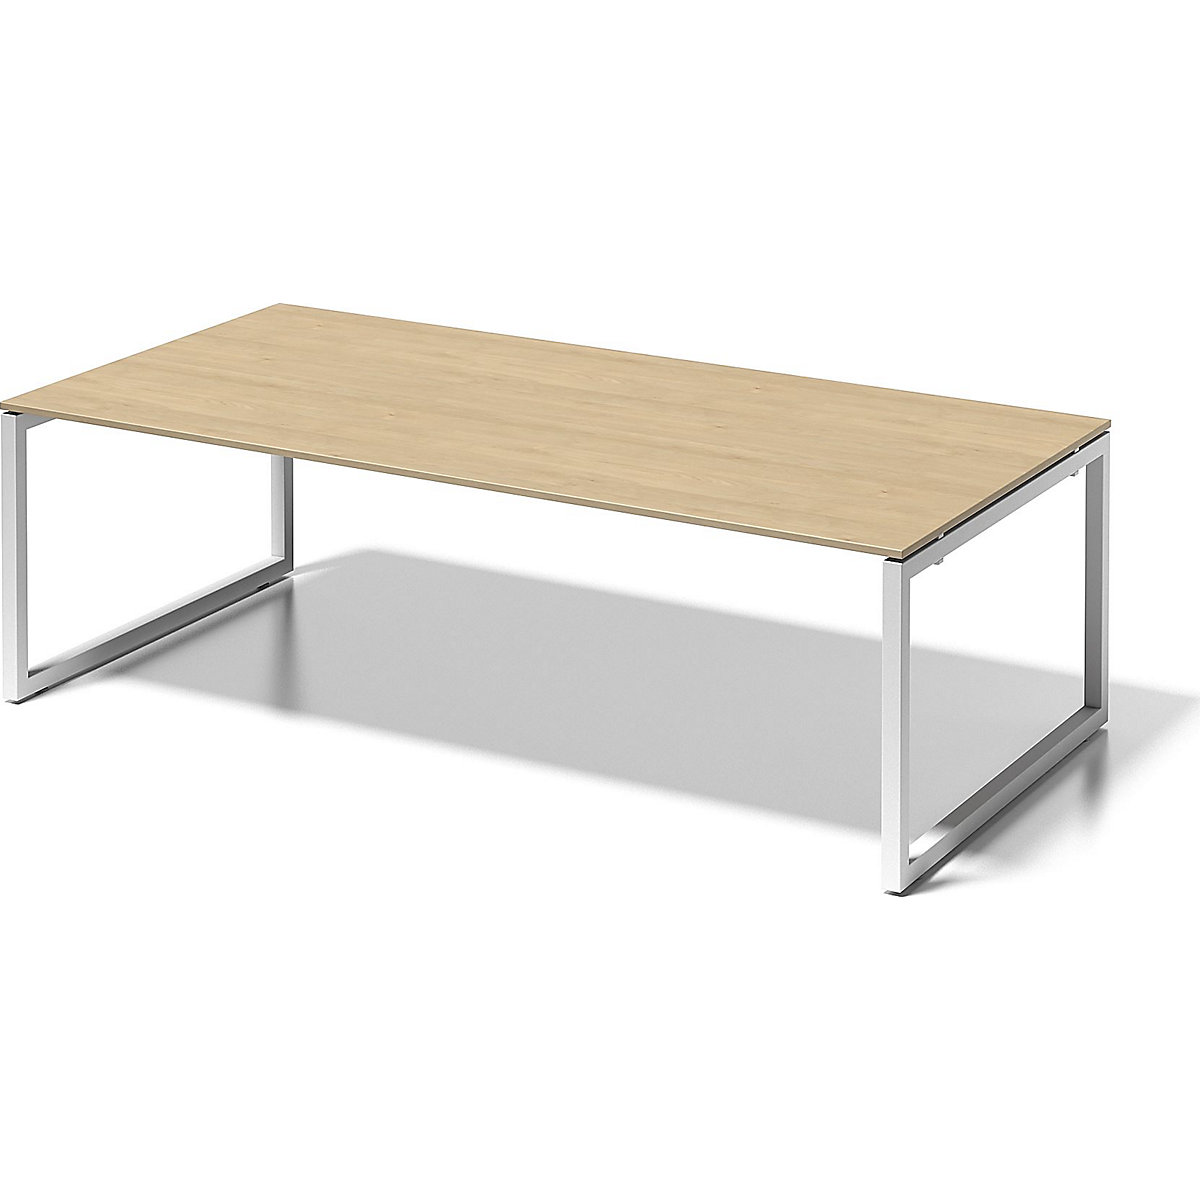 Pisaći stol CITO, postolje u obliku slova O – BISLEY, VxŠxD 740 x 2400 x 1200 mm, postolje u bijeloj boji, ploča od javora-4